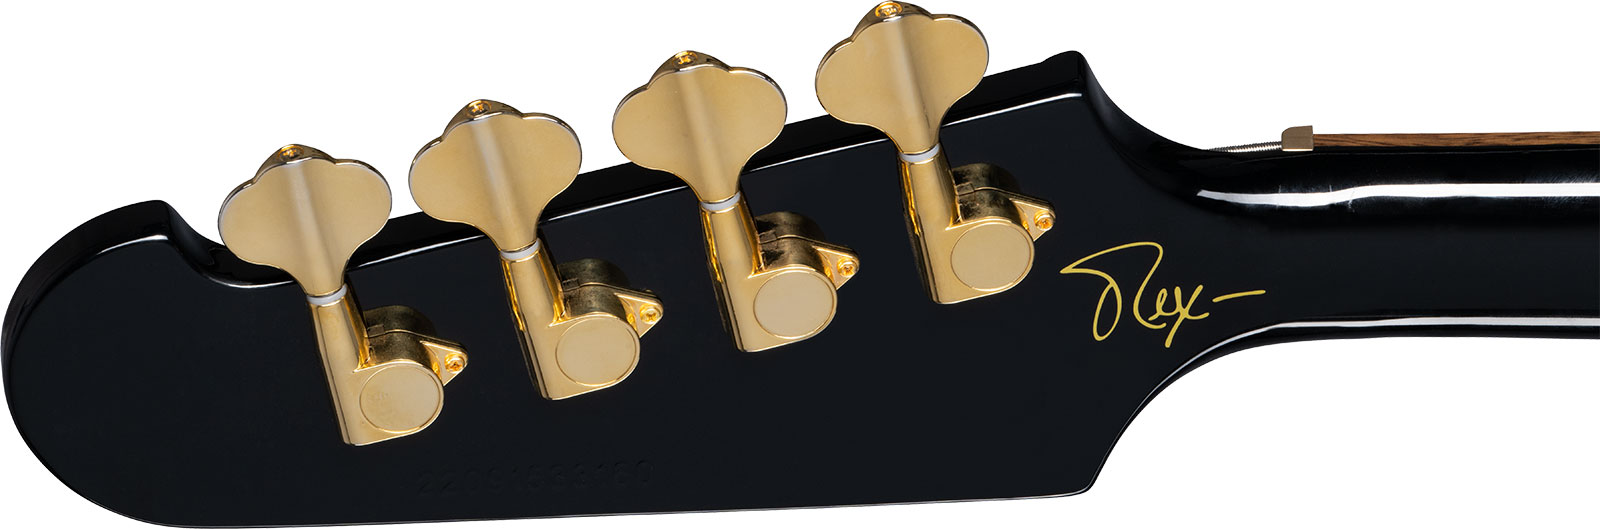 Epiphone Rex Brown Thunderbird Signature Lau - Ebony - Bajo eléctrico de cuerpo sólido - Variation 4